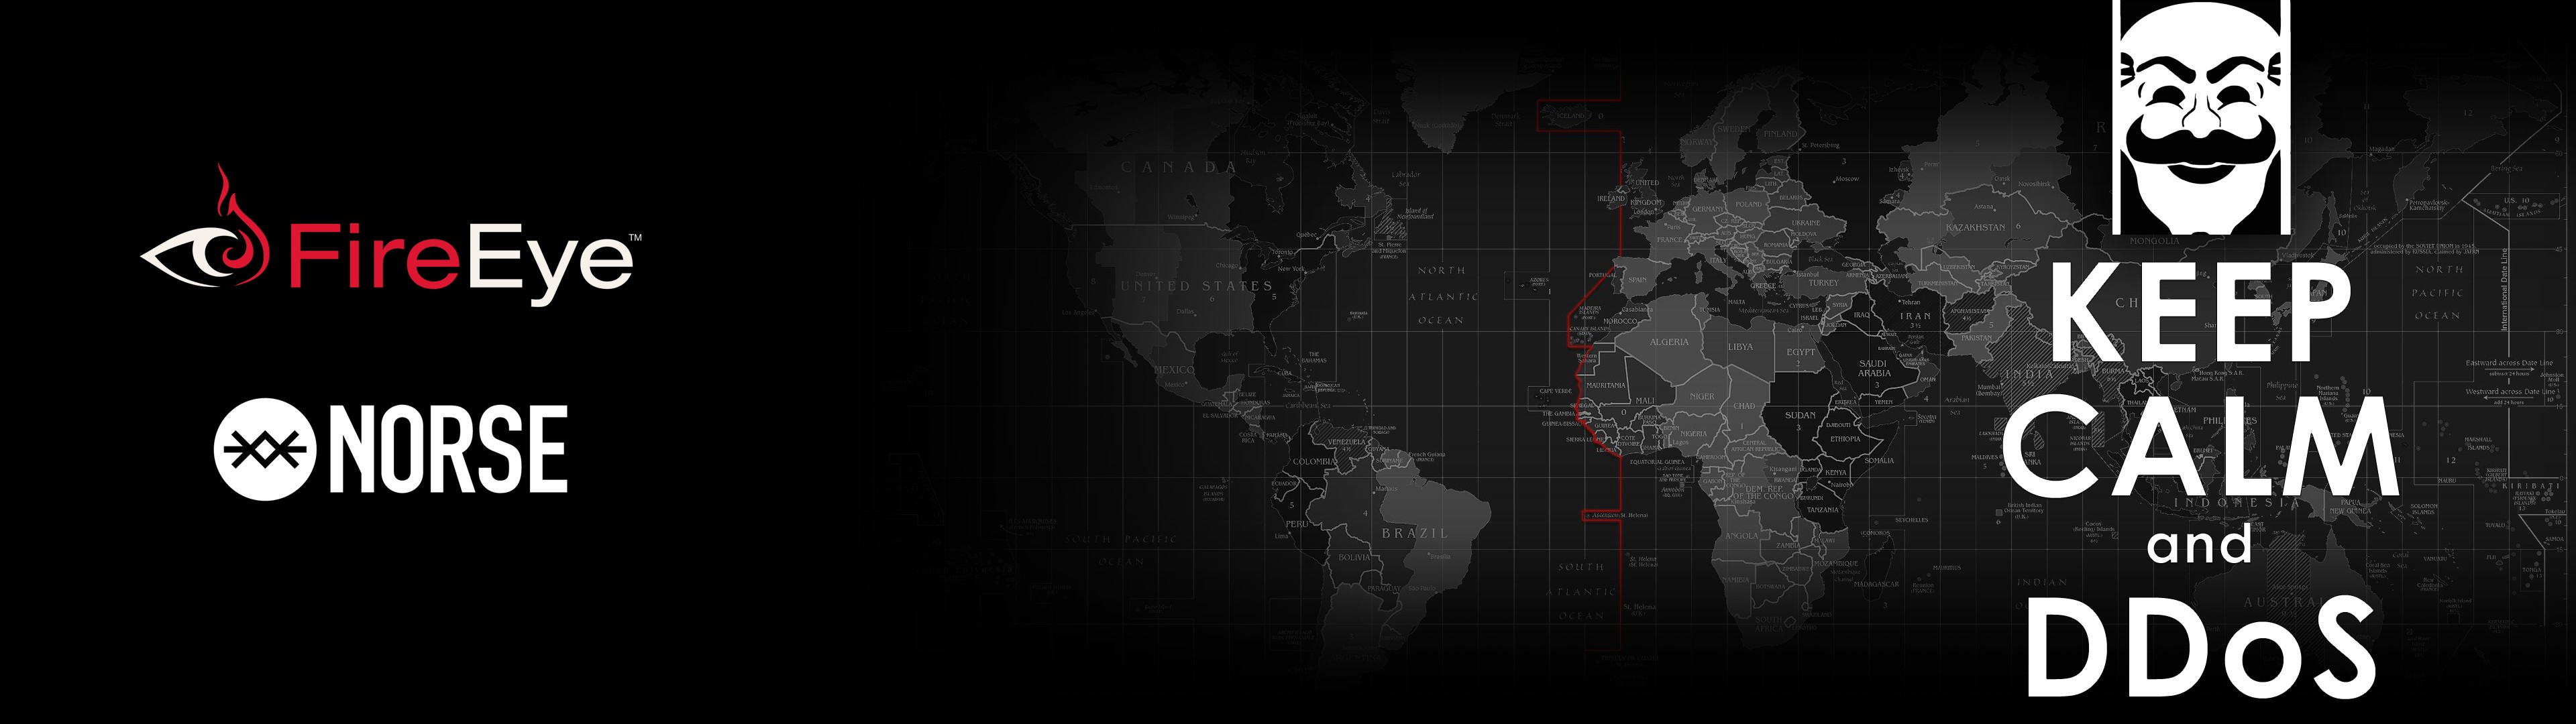 DDoS, Map, Hacking Wallpaper